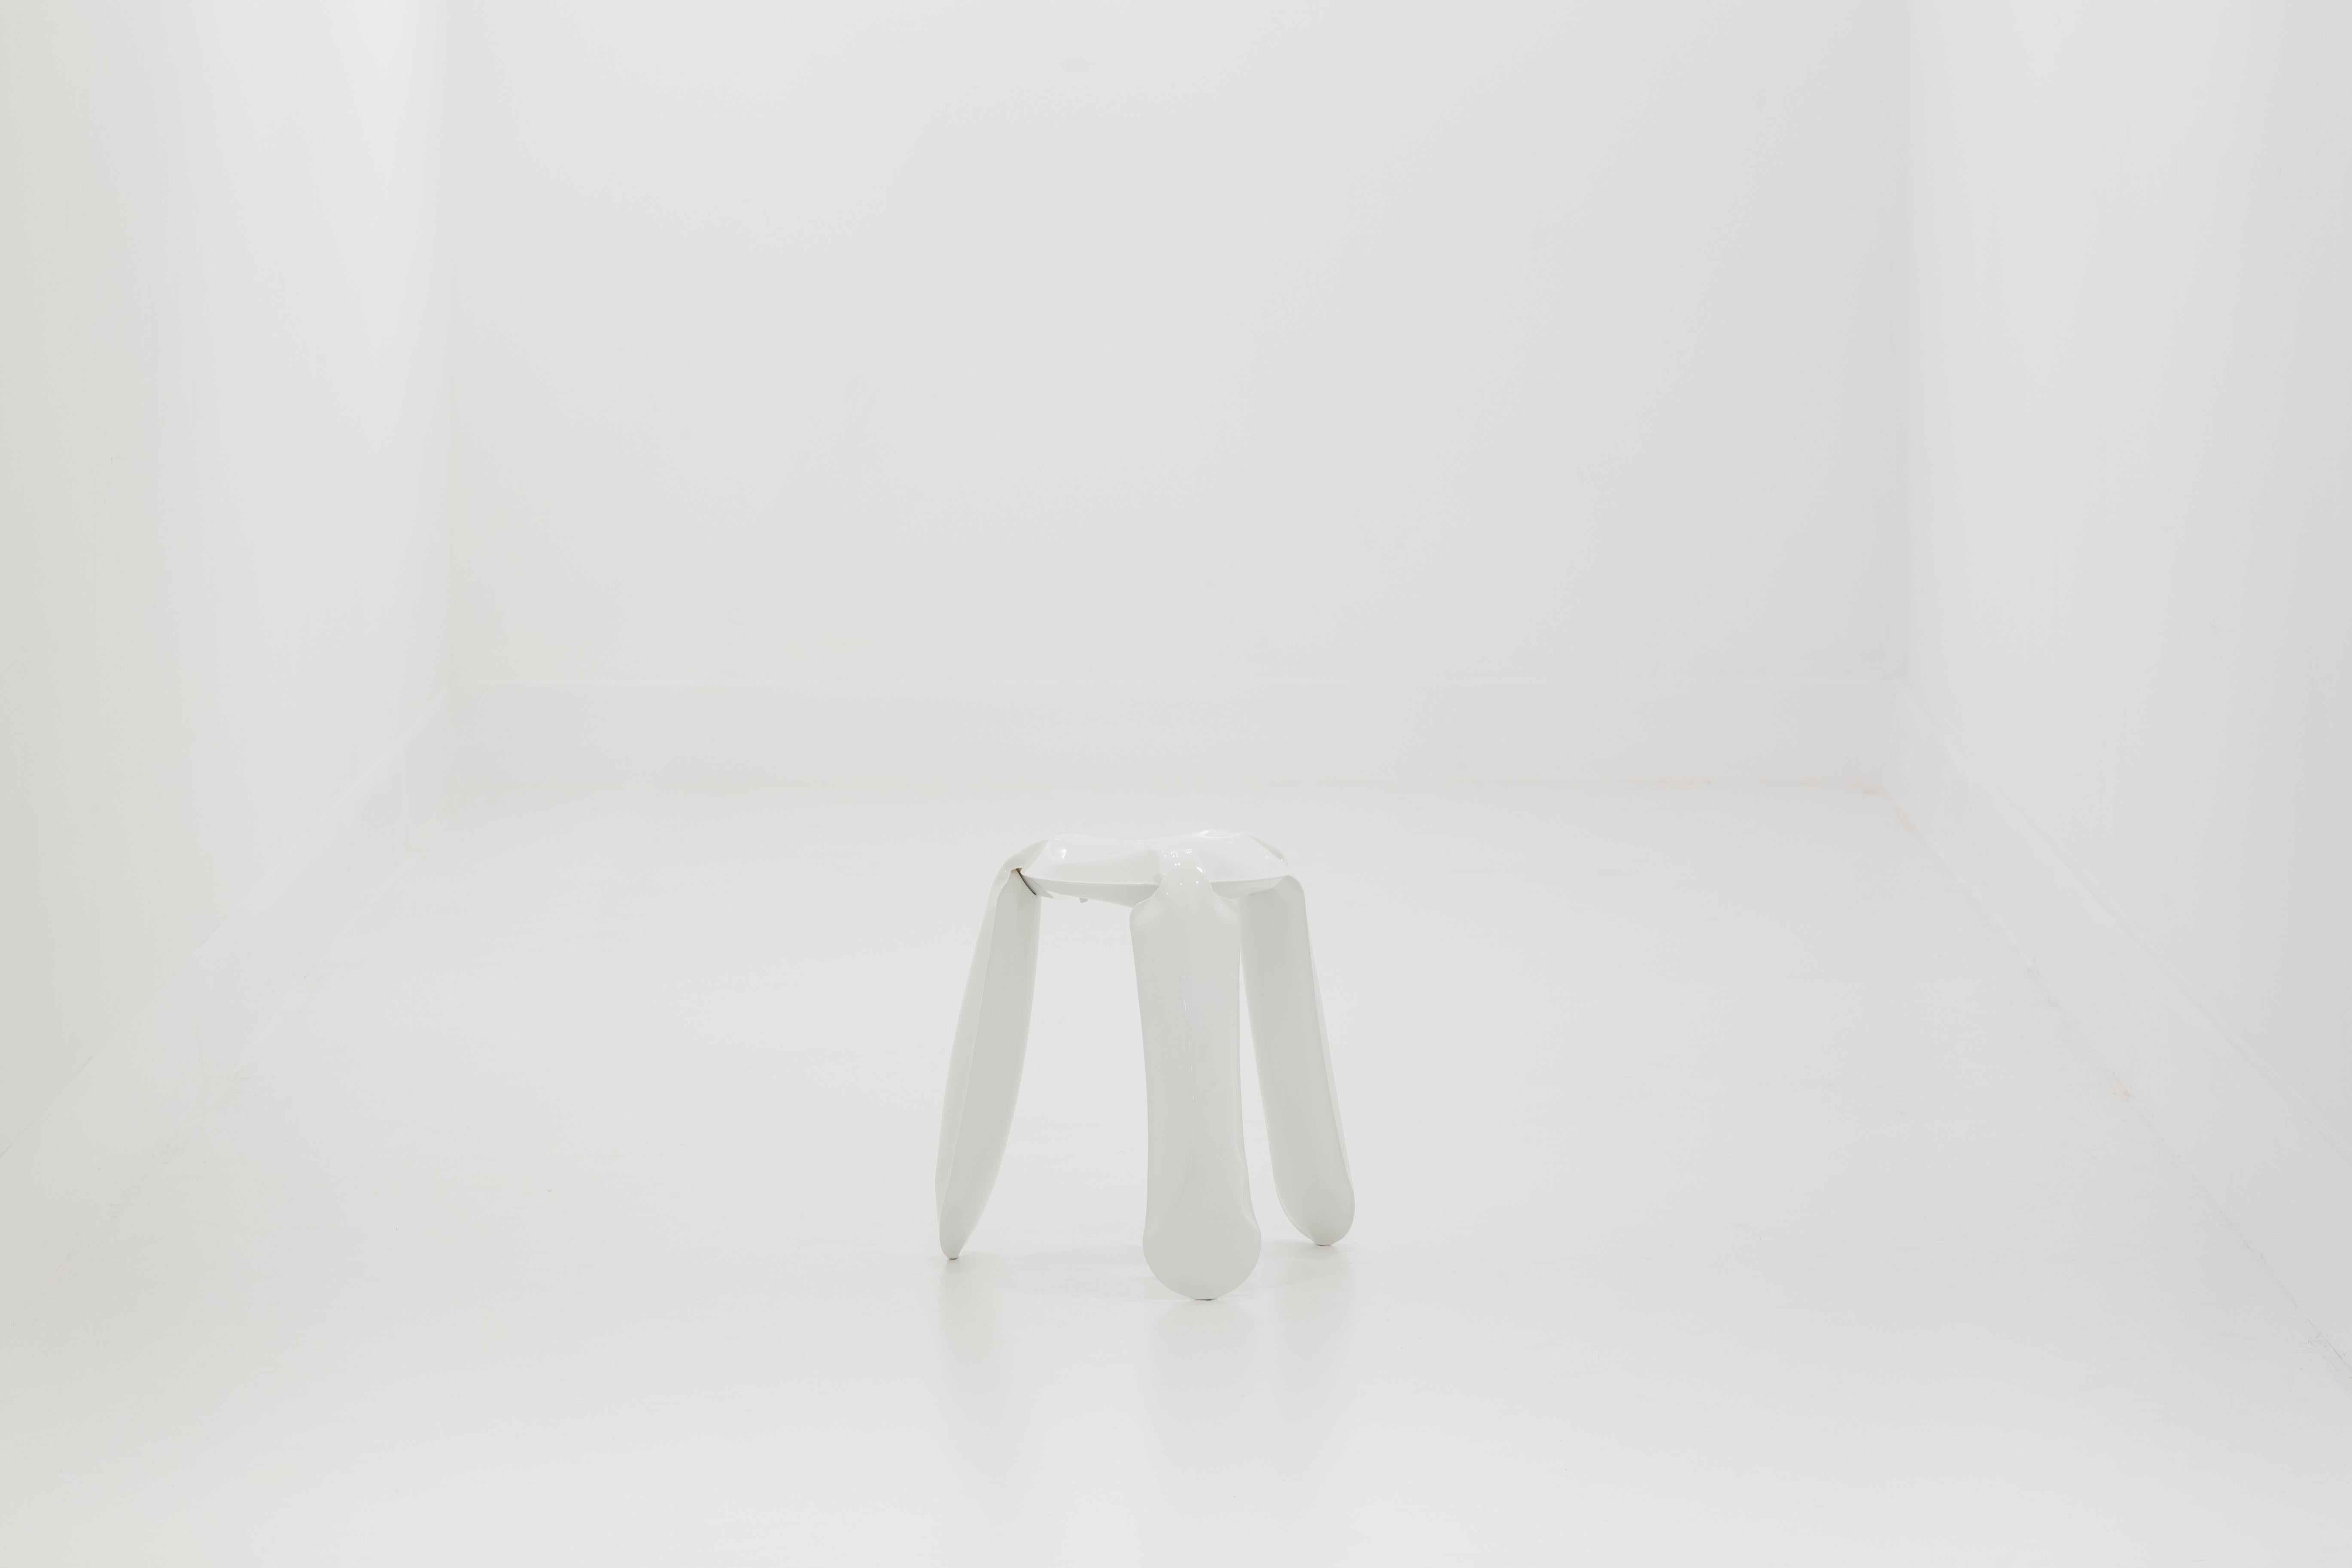 „Plopp“-Hocker von Zieta – weiße Version aus Edelstahl

Modell mini
Abmessungen: 38 cm hoch, 25 cm Durchmesser

 
Plopp ist ein Hocker, entworfen von Zieta Prozessdesign, einer renommierten Designagentur, die von dem bekannten Designer Oskar